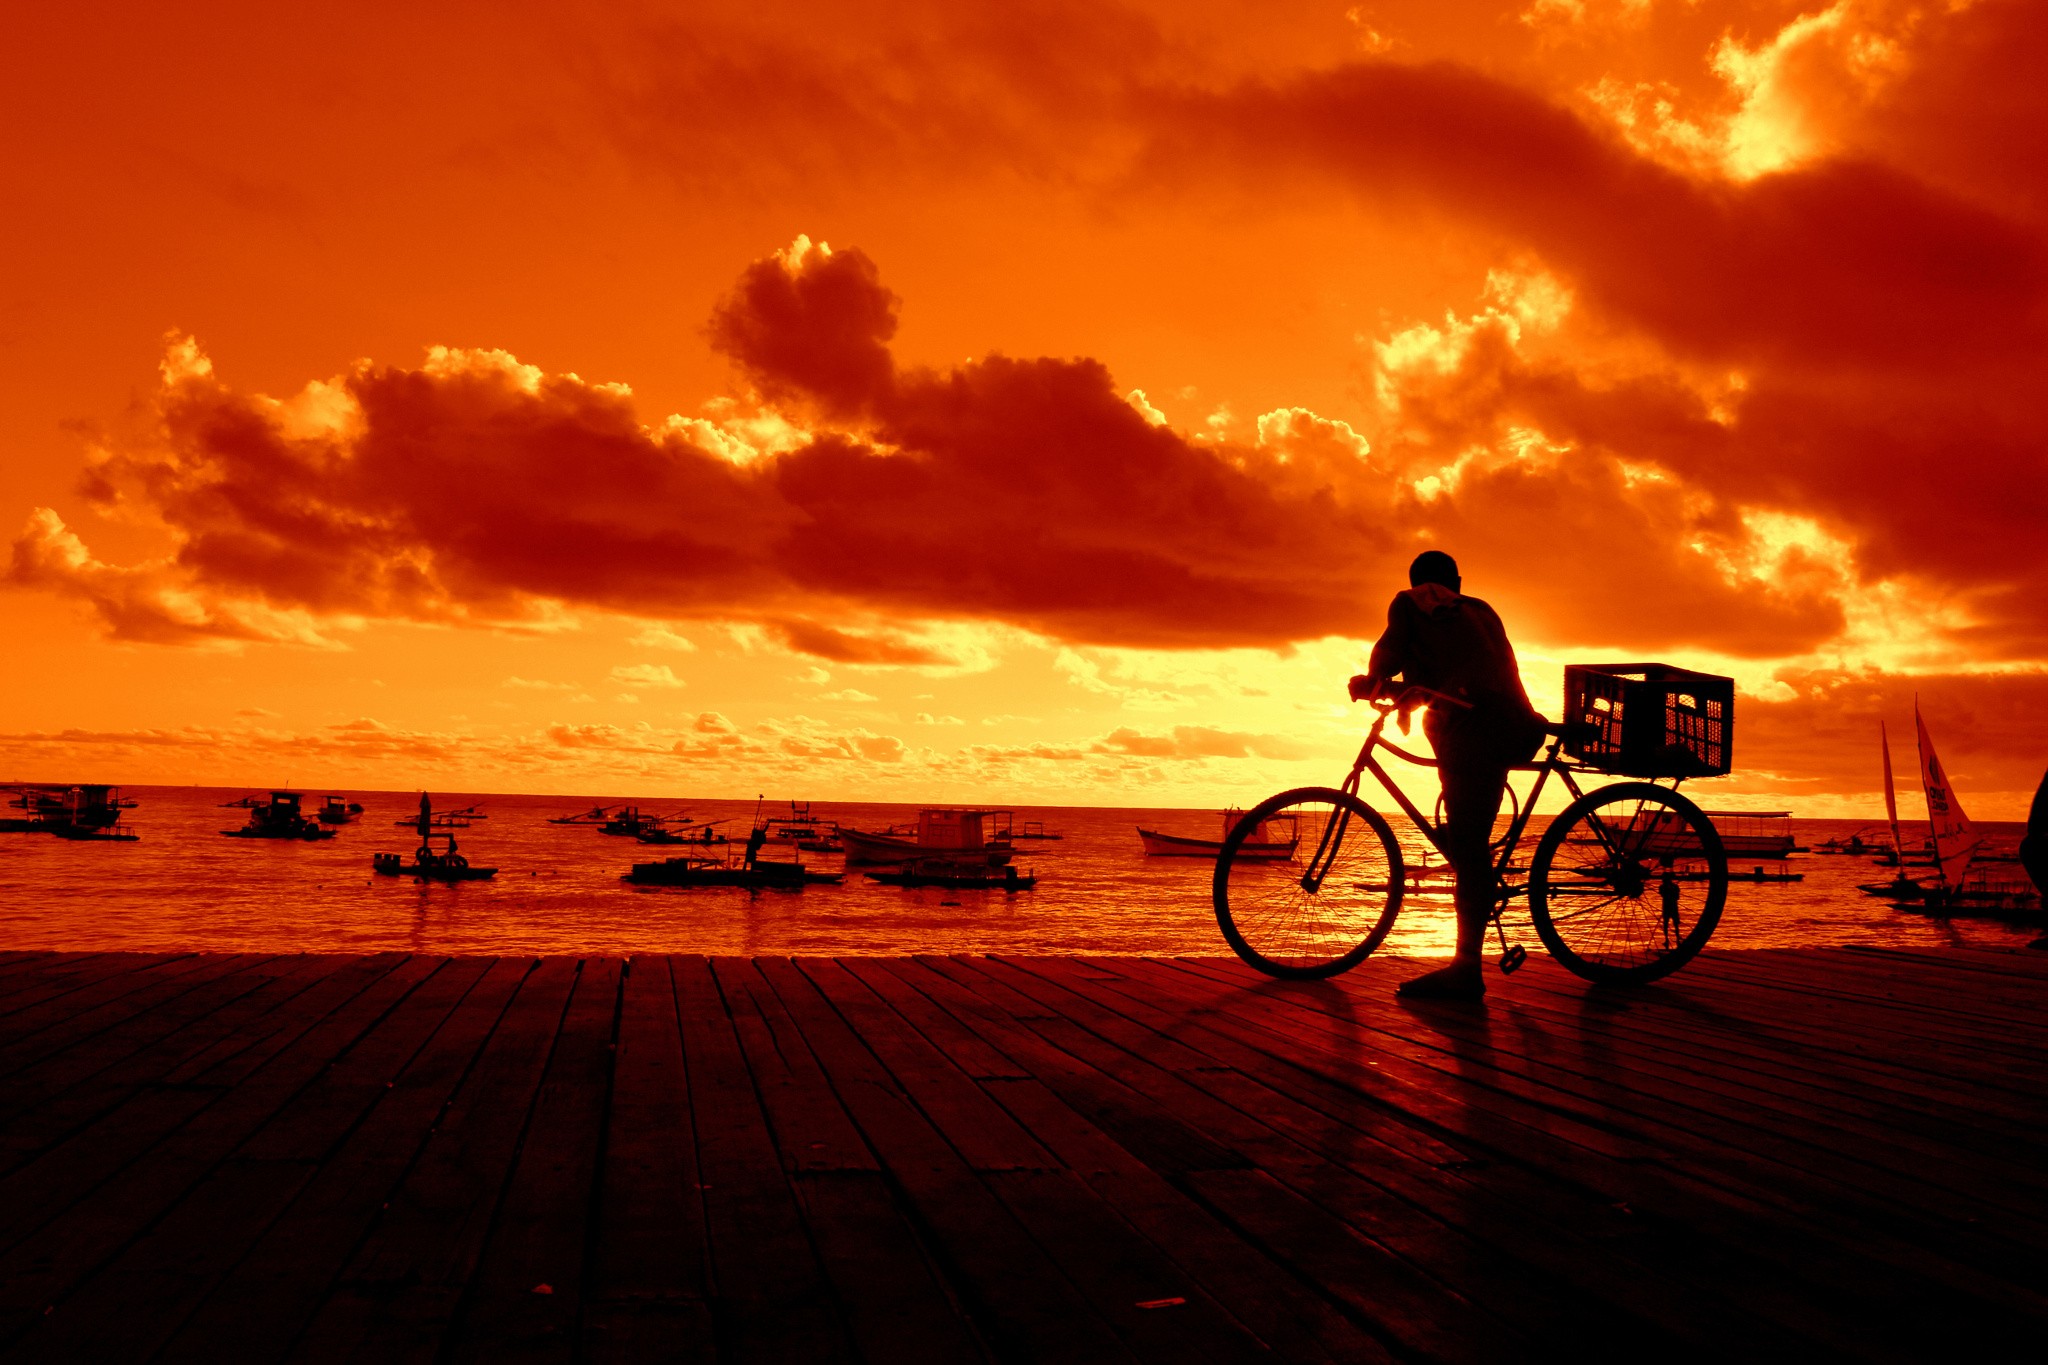 General 2048x1365 outdoors sky bicycle vehicle orange sky sea dark